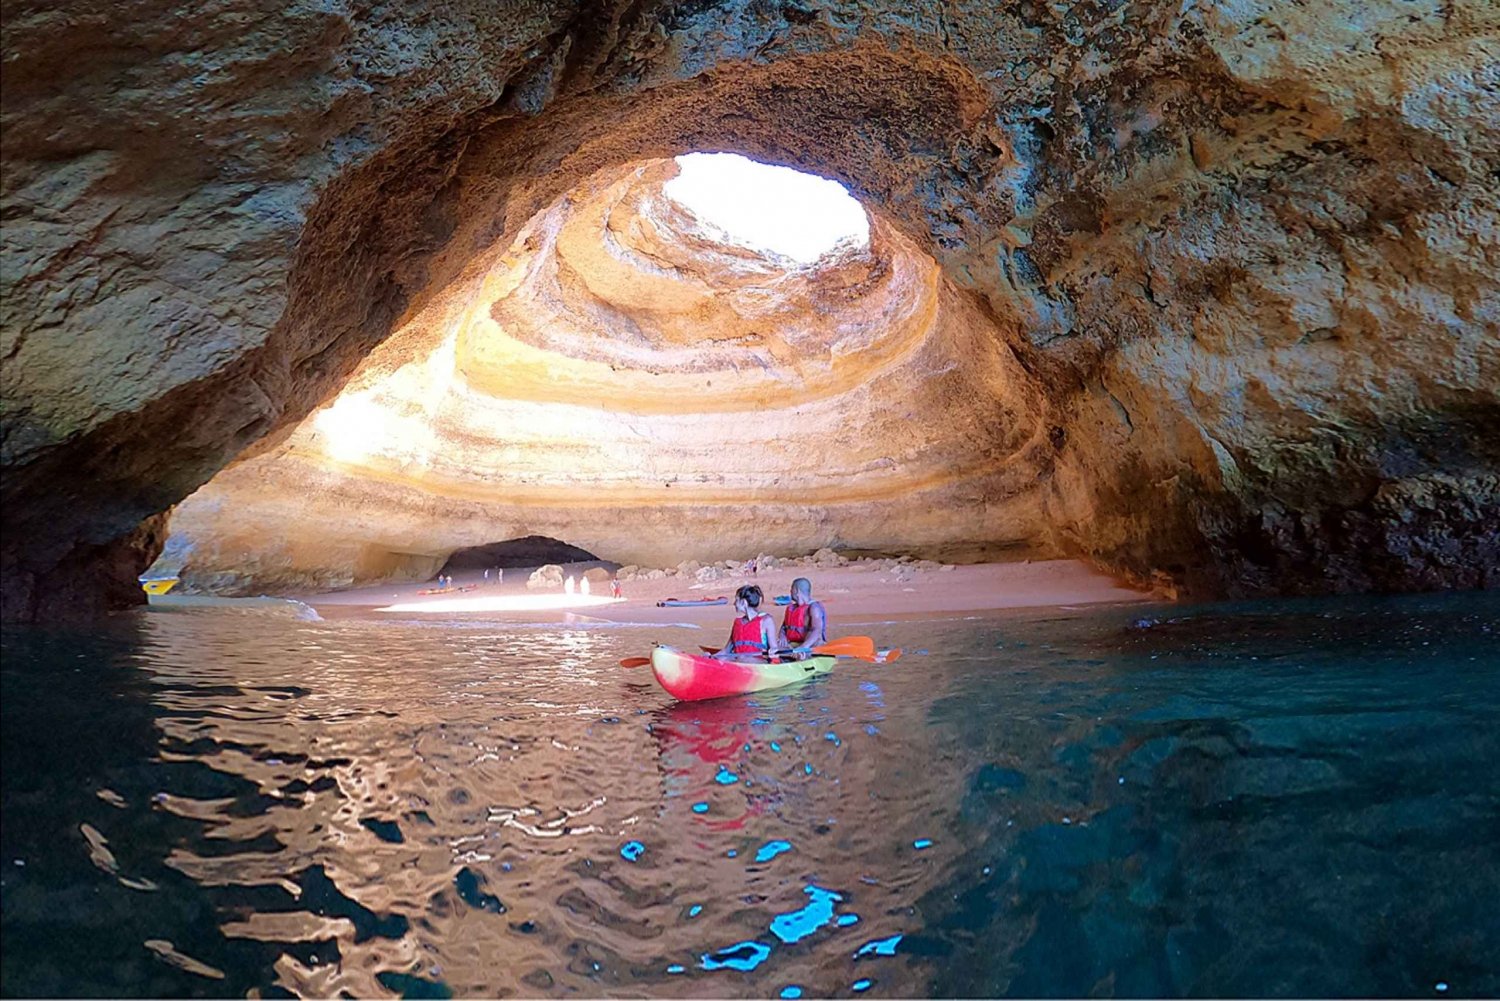 Benagil: Kajak-eventyr i Benagils grotter og Marinha-stranden